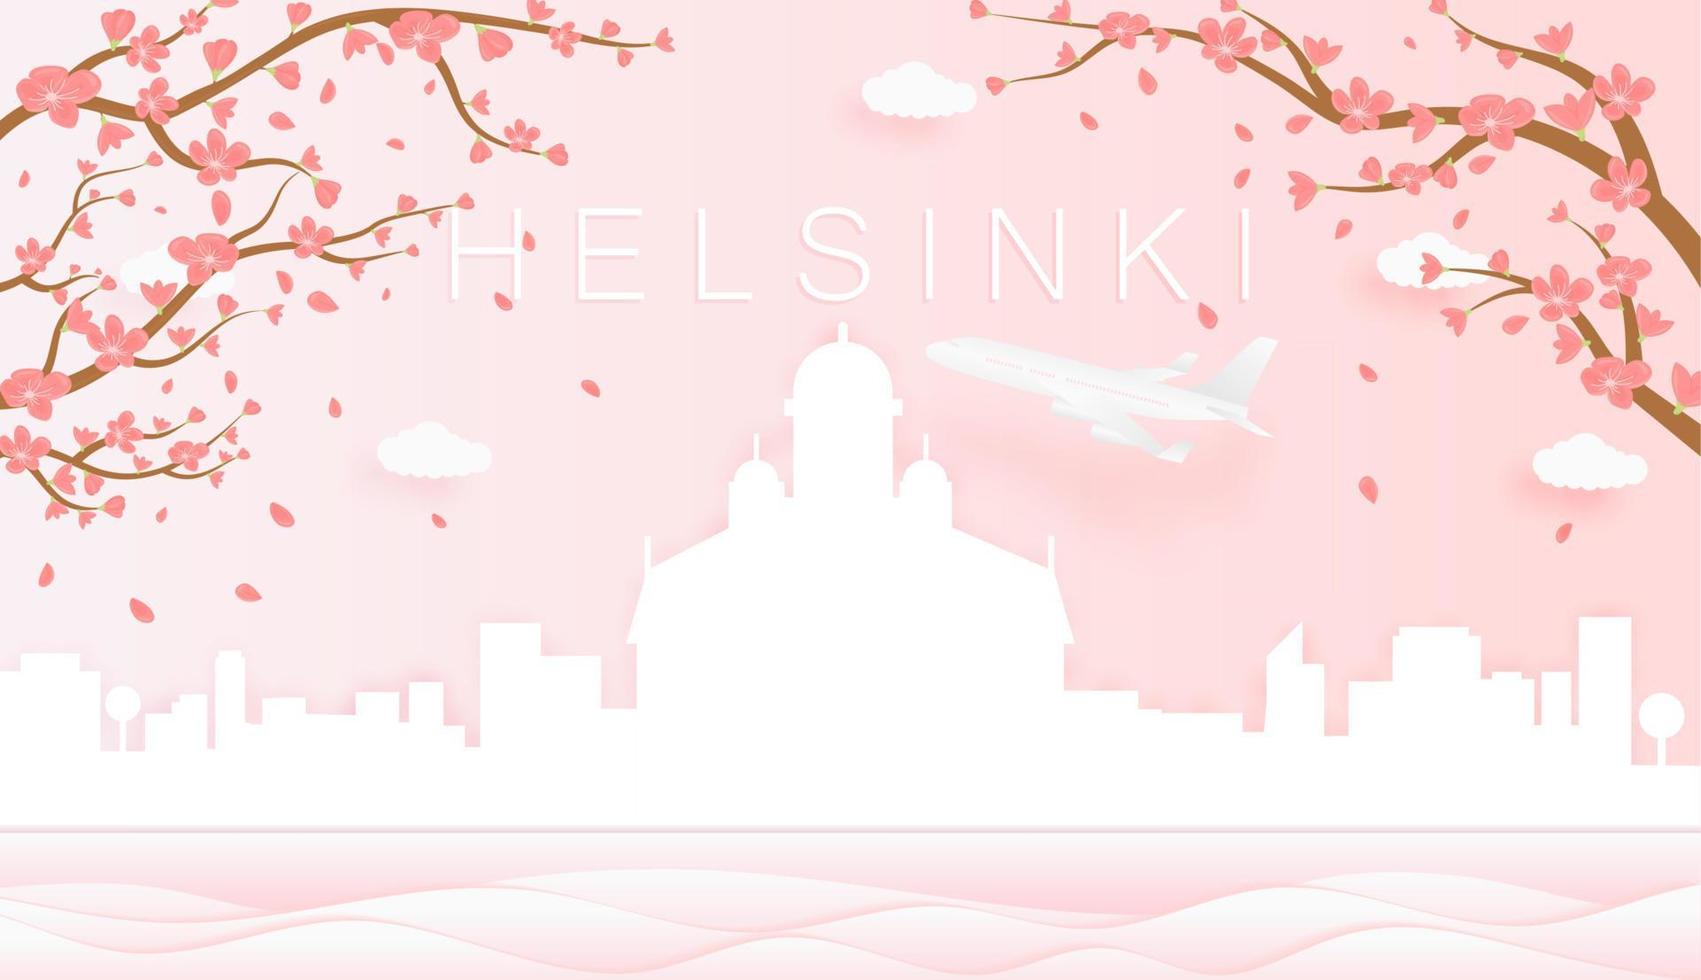 panorama reizen ansichtkaart, poster, tour reclame van wereld beroemd oriëntatiepunten van Helsinki, voorjaar seizoen met bloeiend bloemen in boom in papier besnoeiing stijl vector